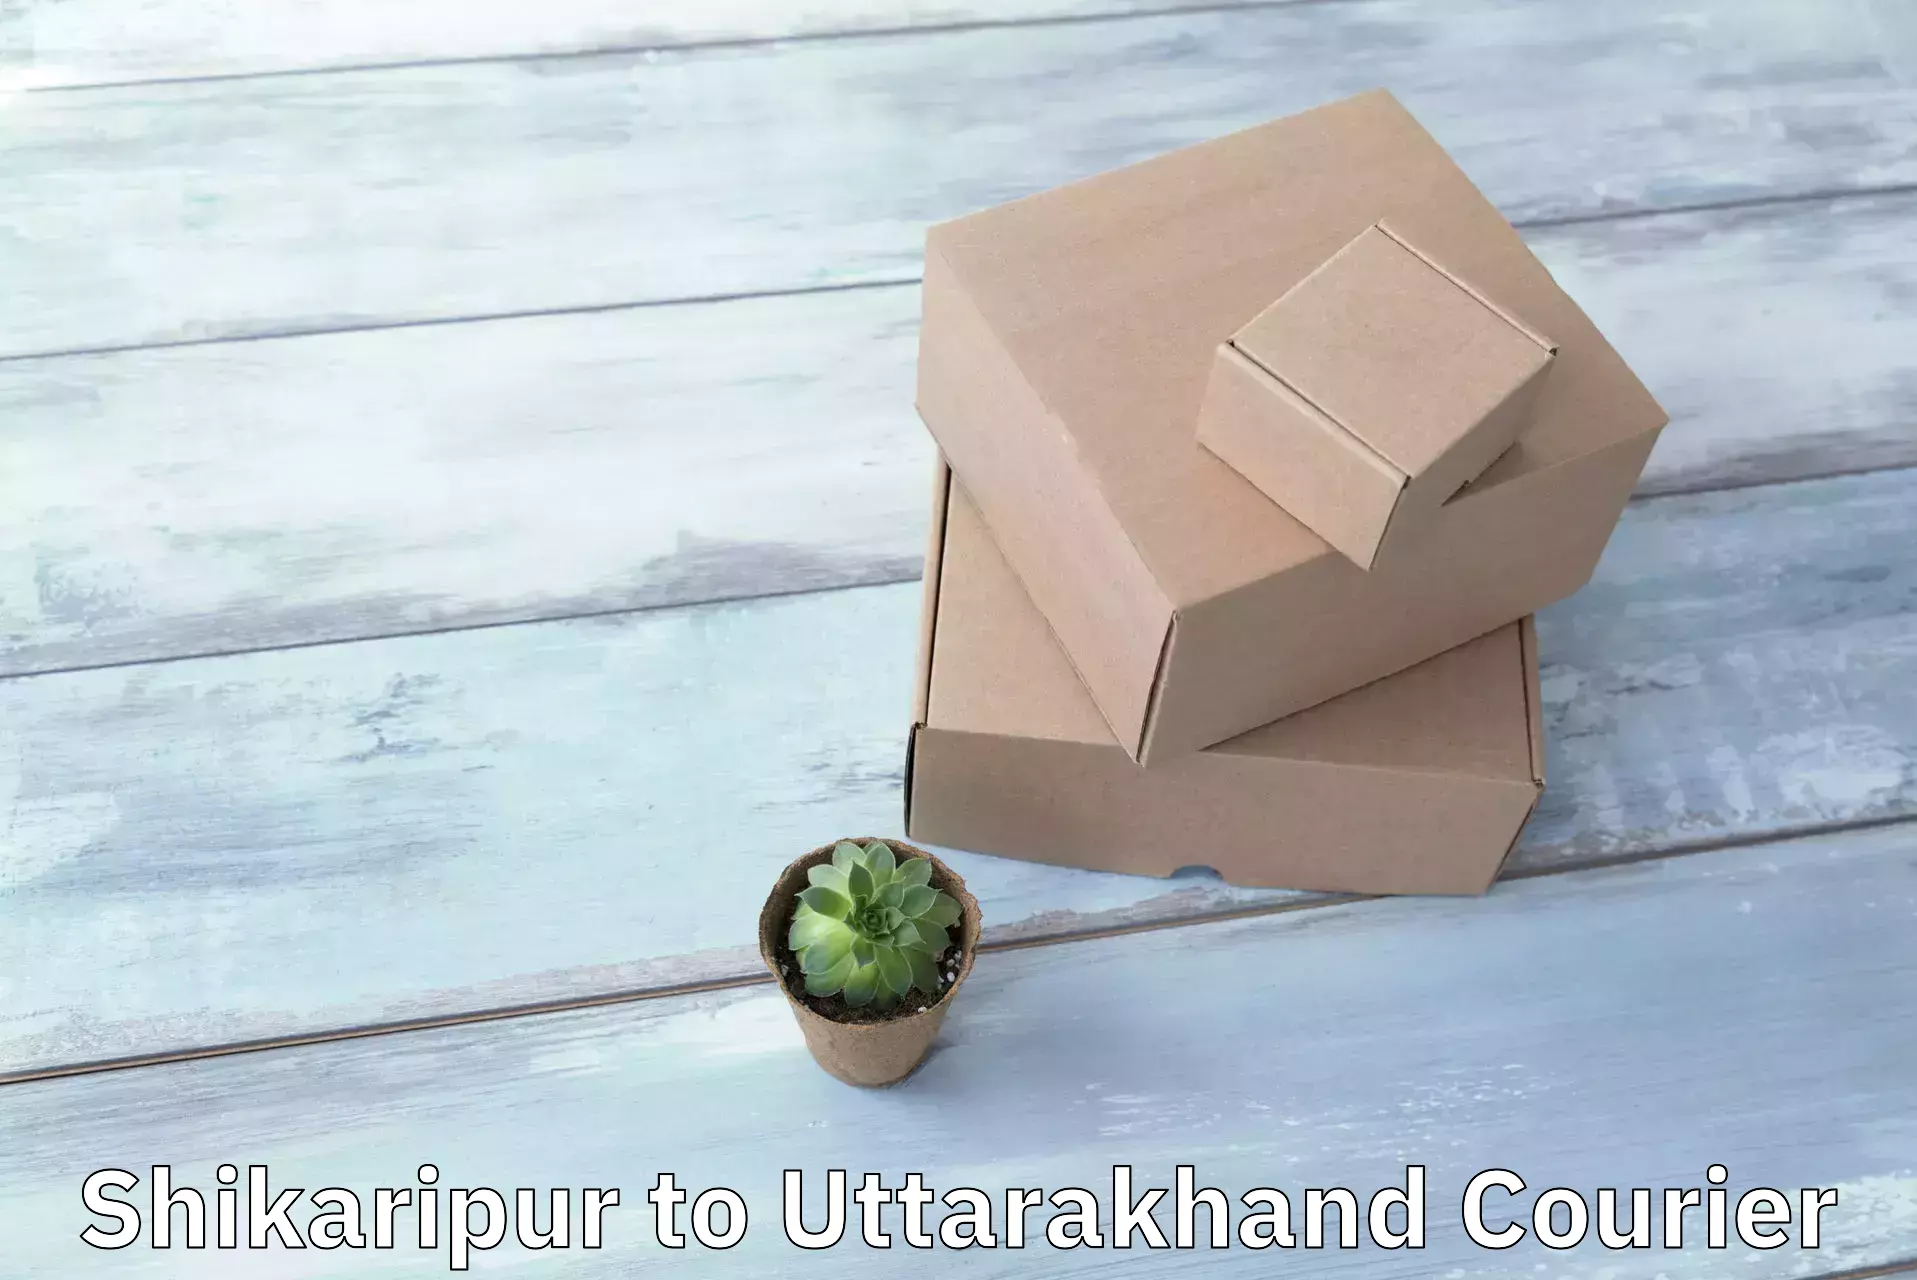 High-capacity parcel service Shikaripur to Haridwar